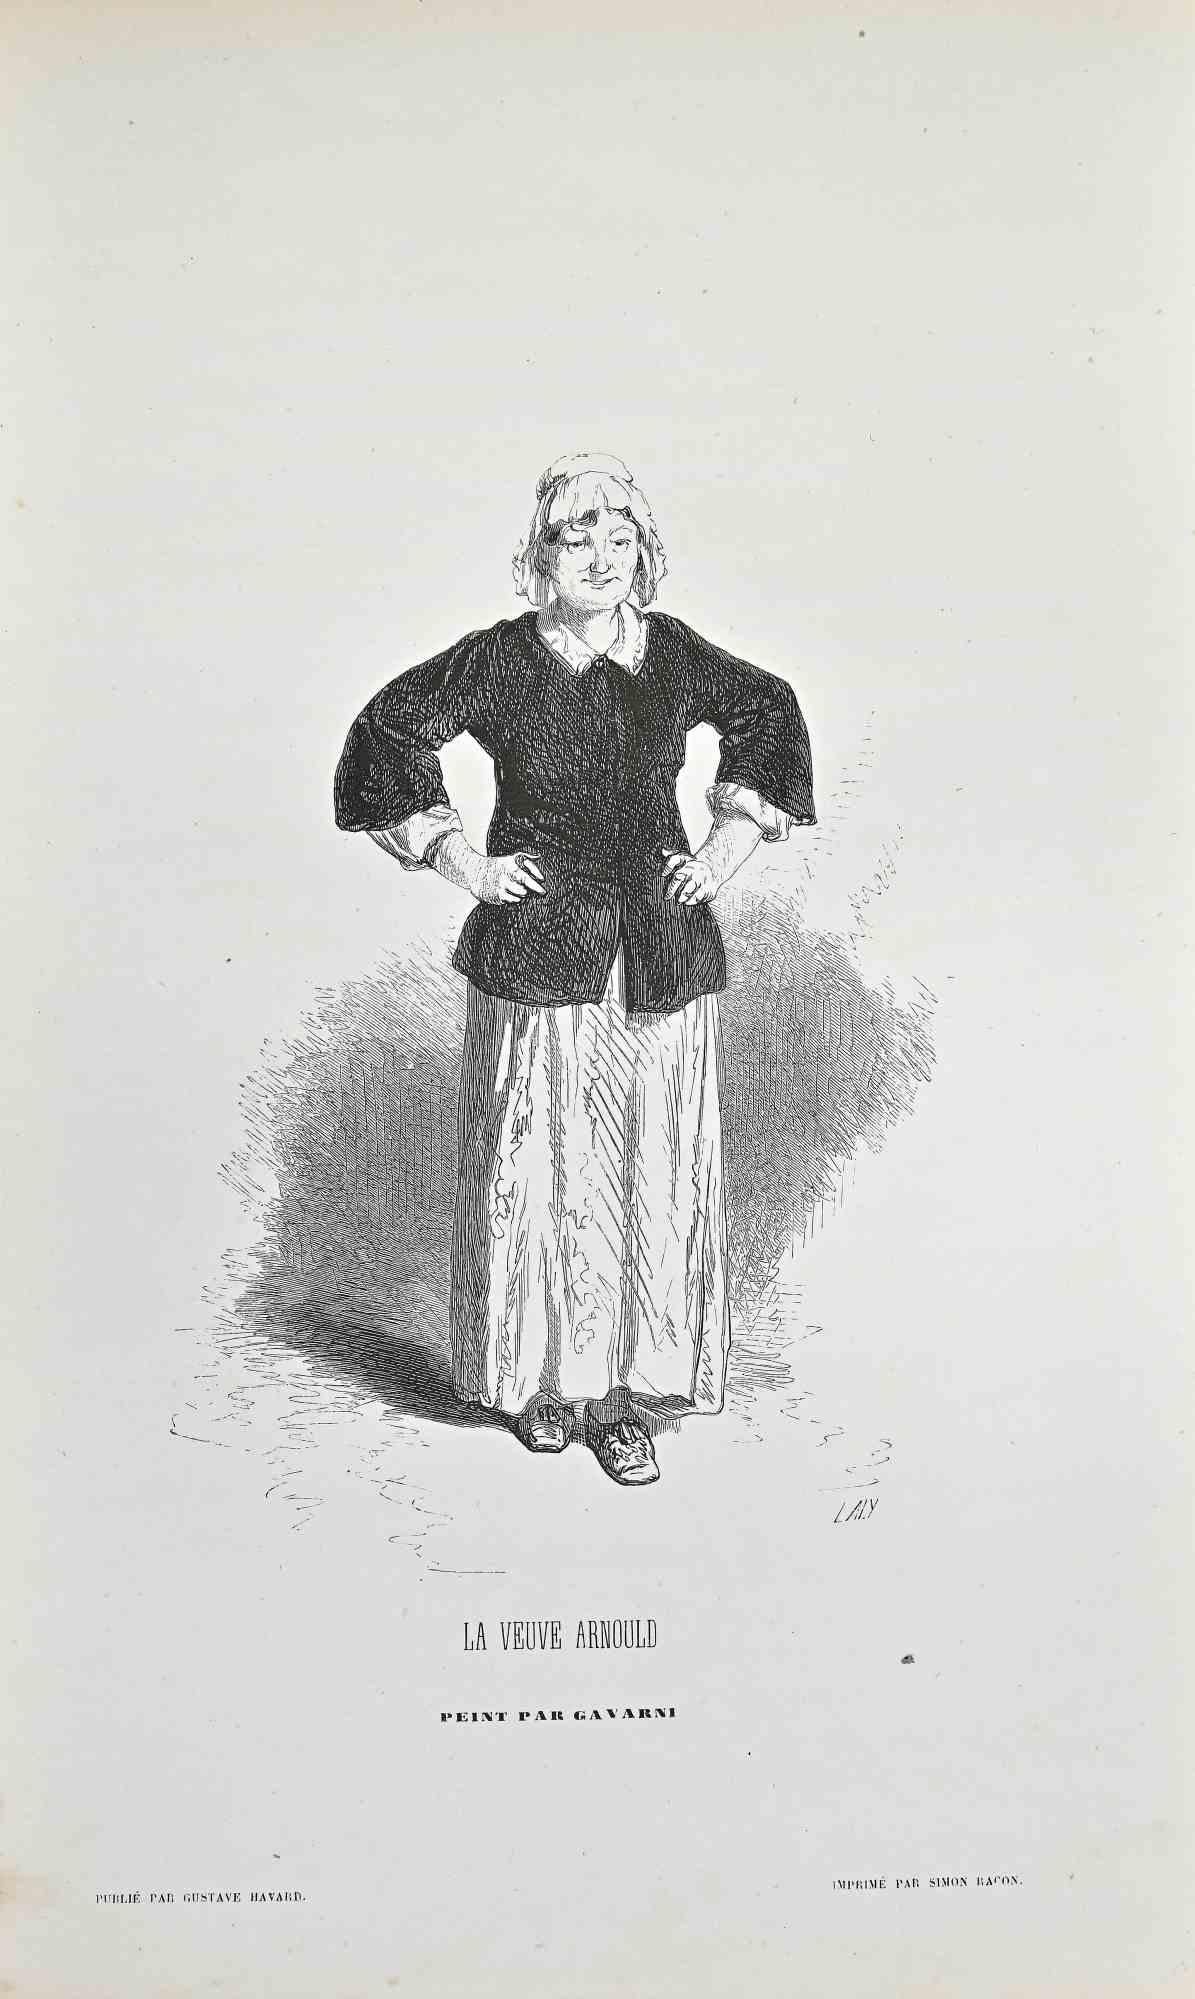 La Veuve Arnold - Litografia di Paul Gavarni - metà del XIX secolo